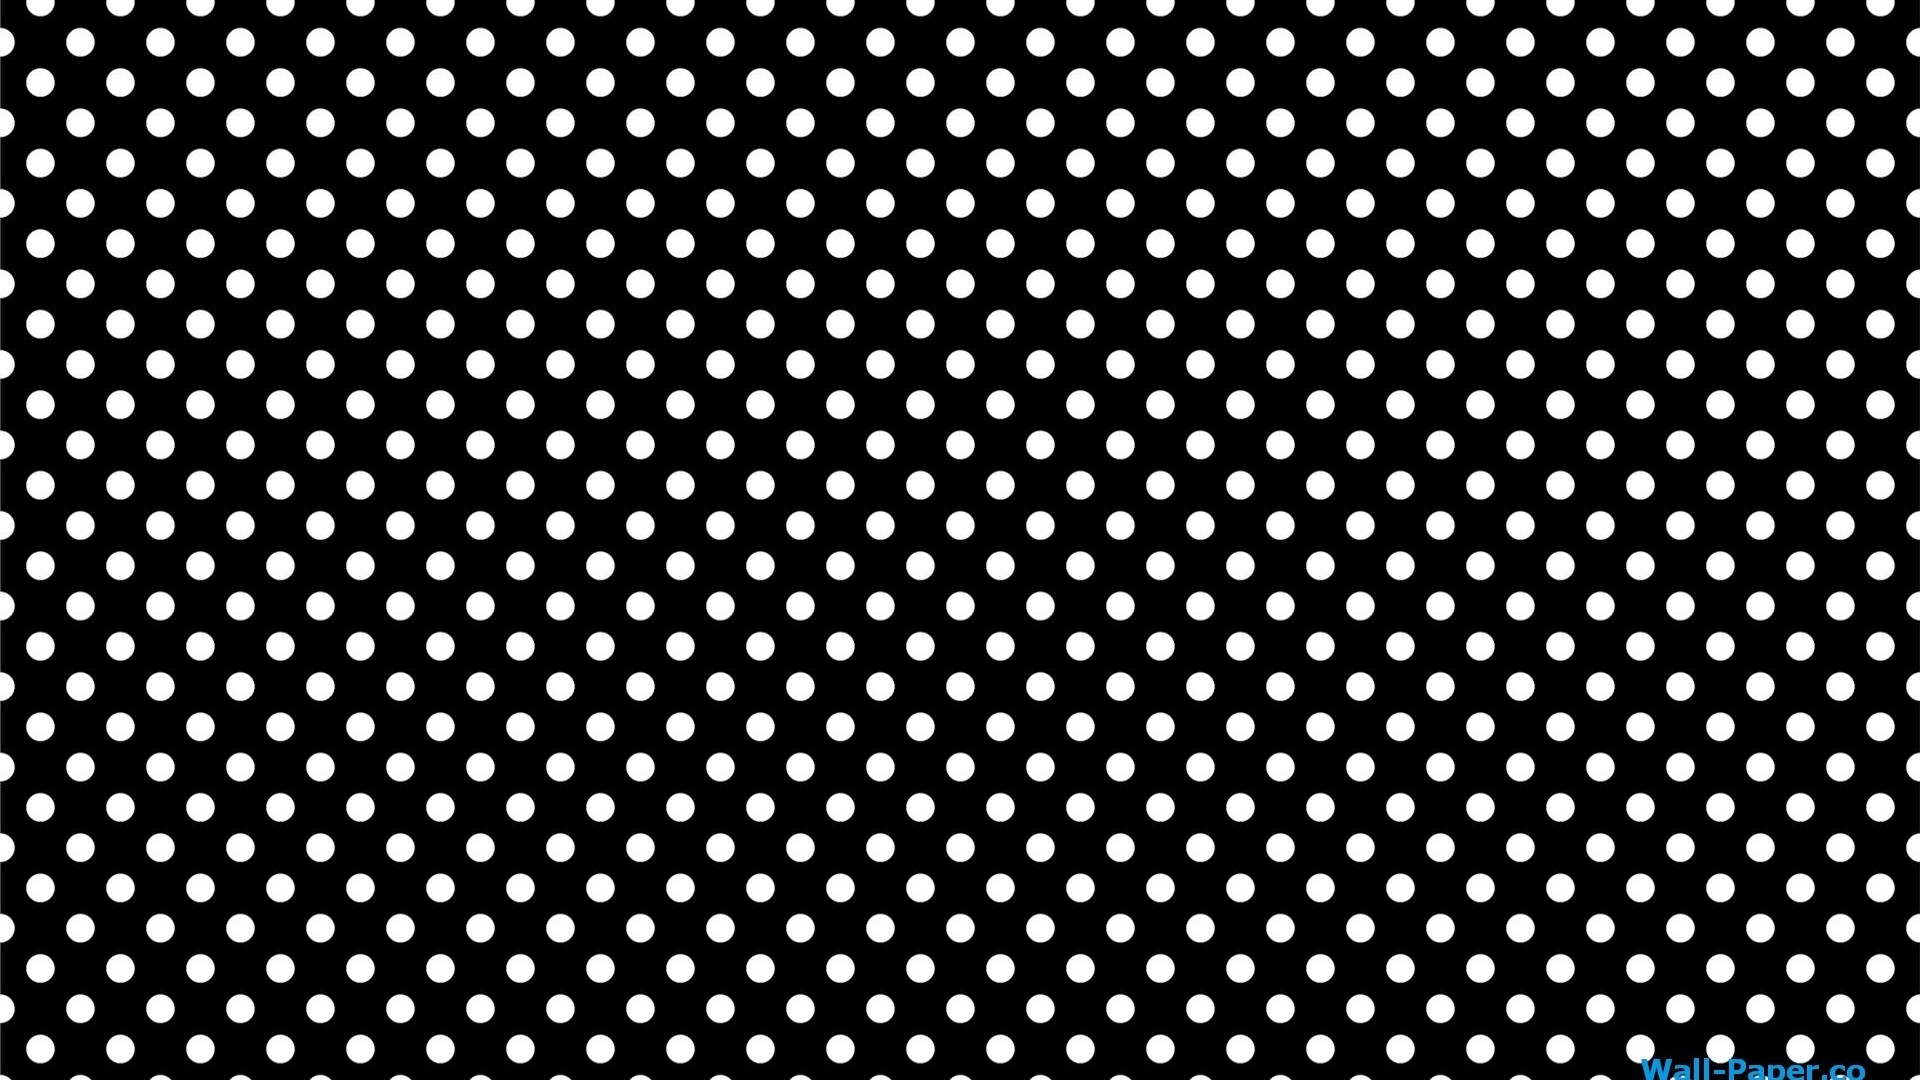 HD Polka Dot Wallpaper (54+ images)